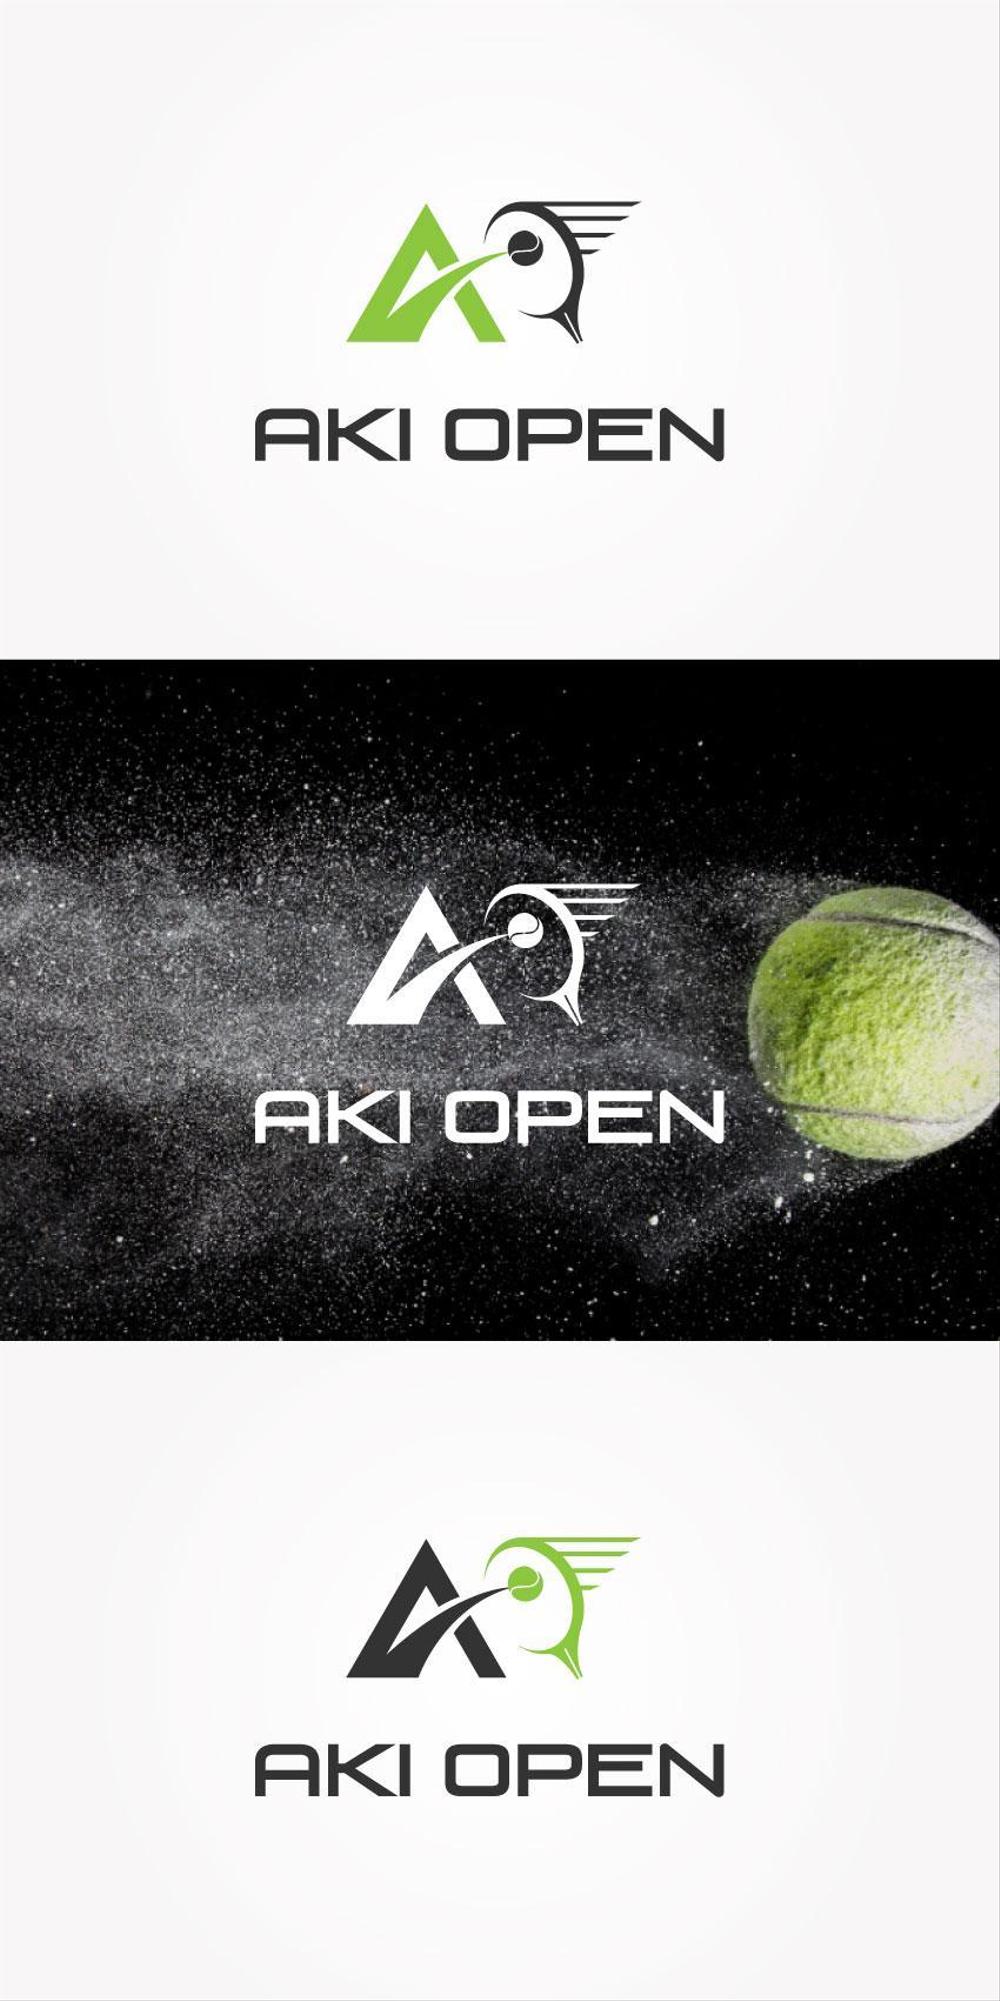 AKI-OPEN-02.jpg